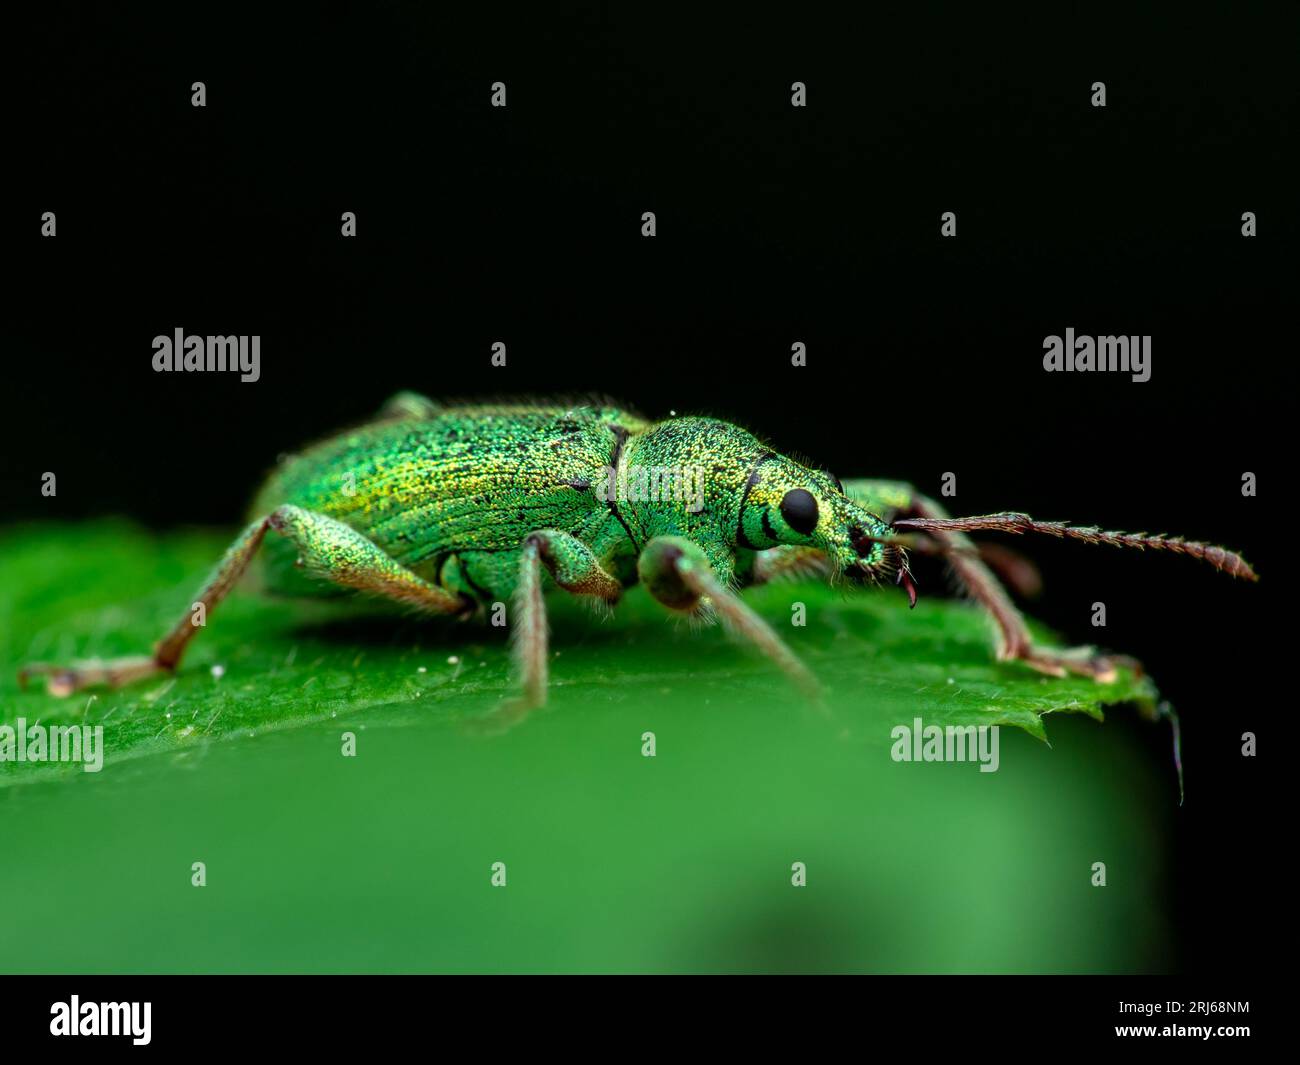 Eine Makroaufnahme eines blassgrünen Weevil-Insekts, das auf einem einzelnen Blatt in einer schattigen Umgebung thront Stockfoto